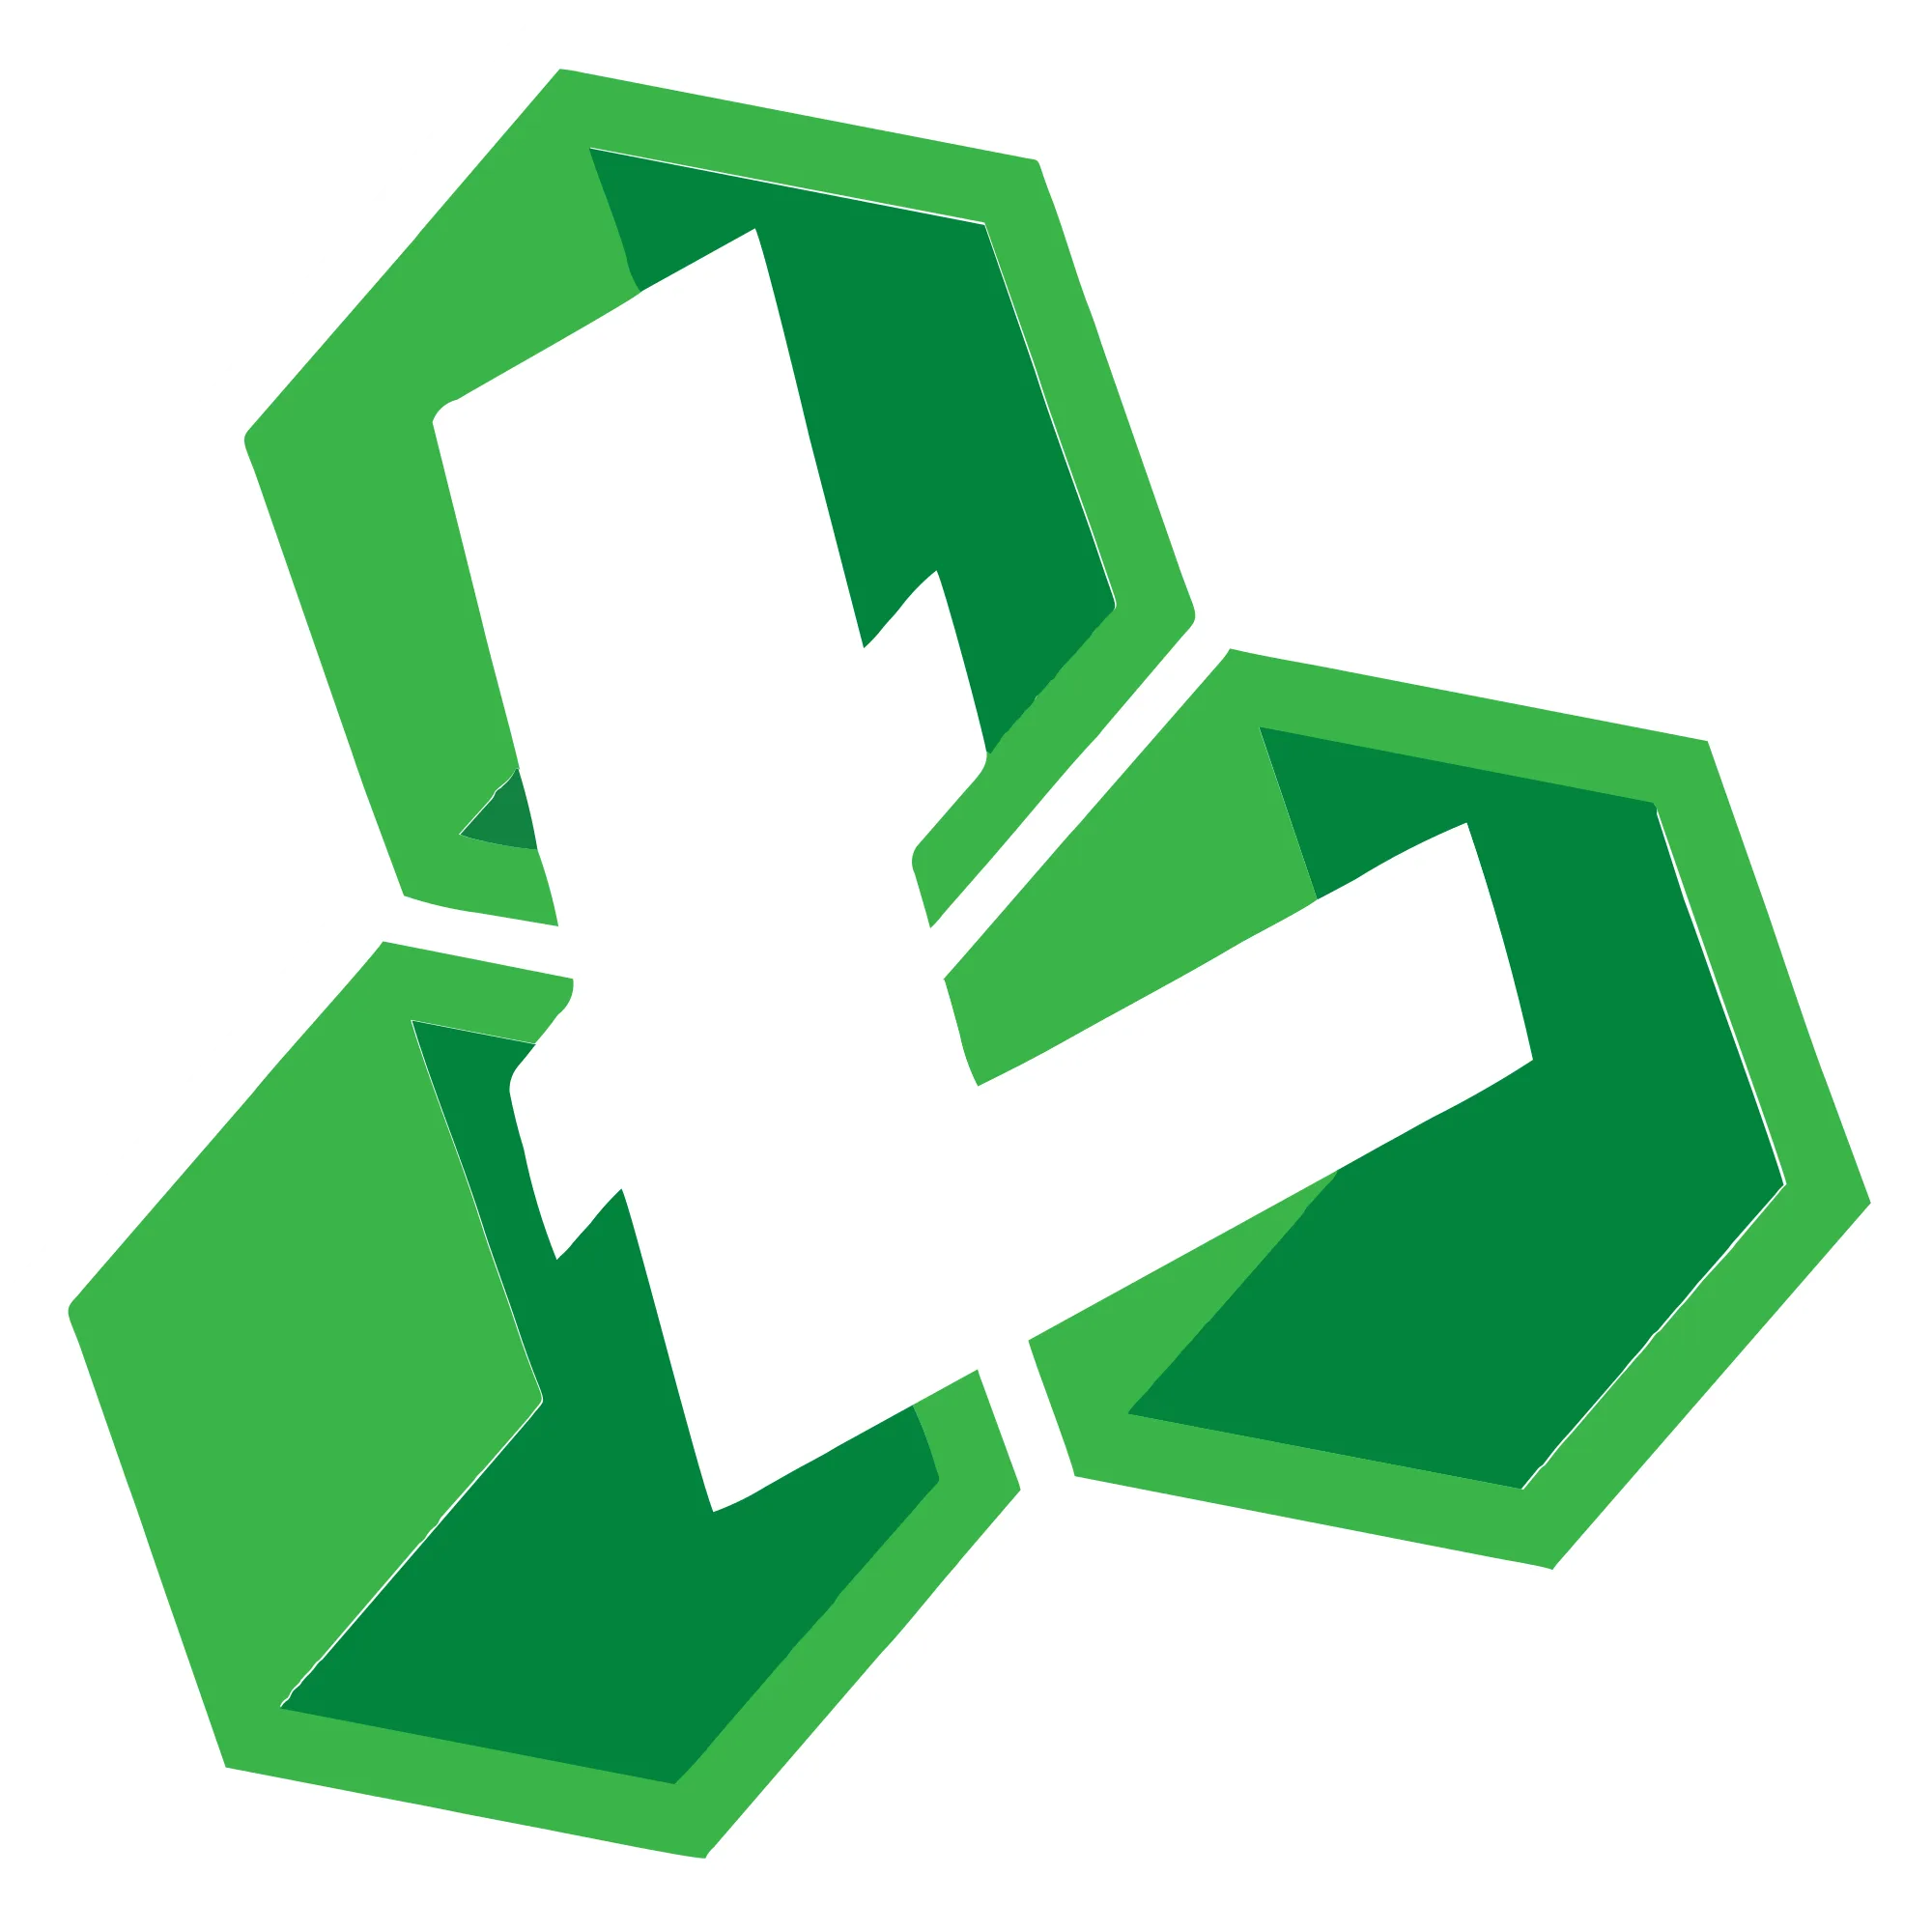 Litecoin Cash logo in png format